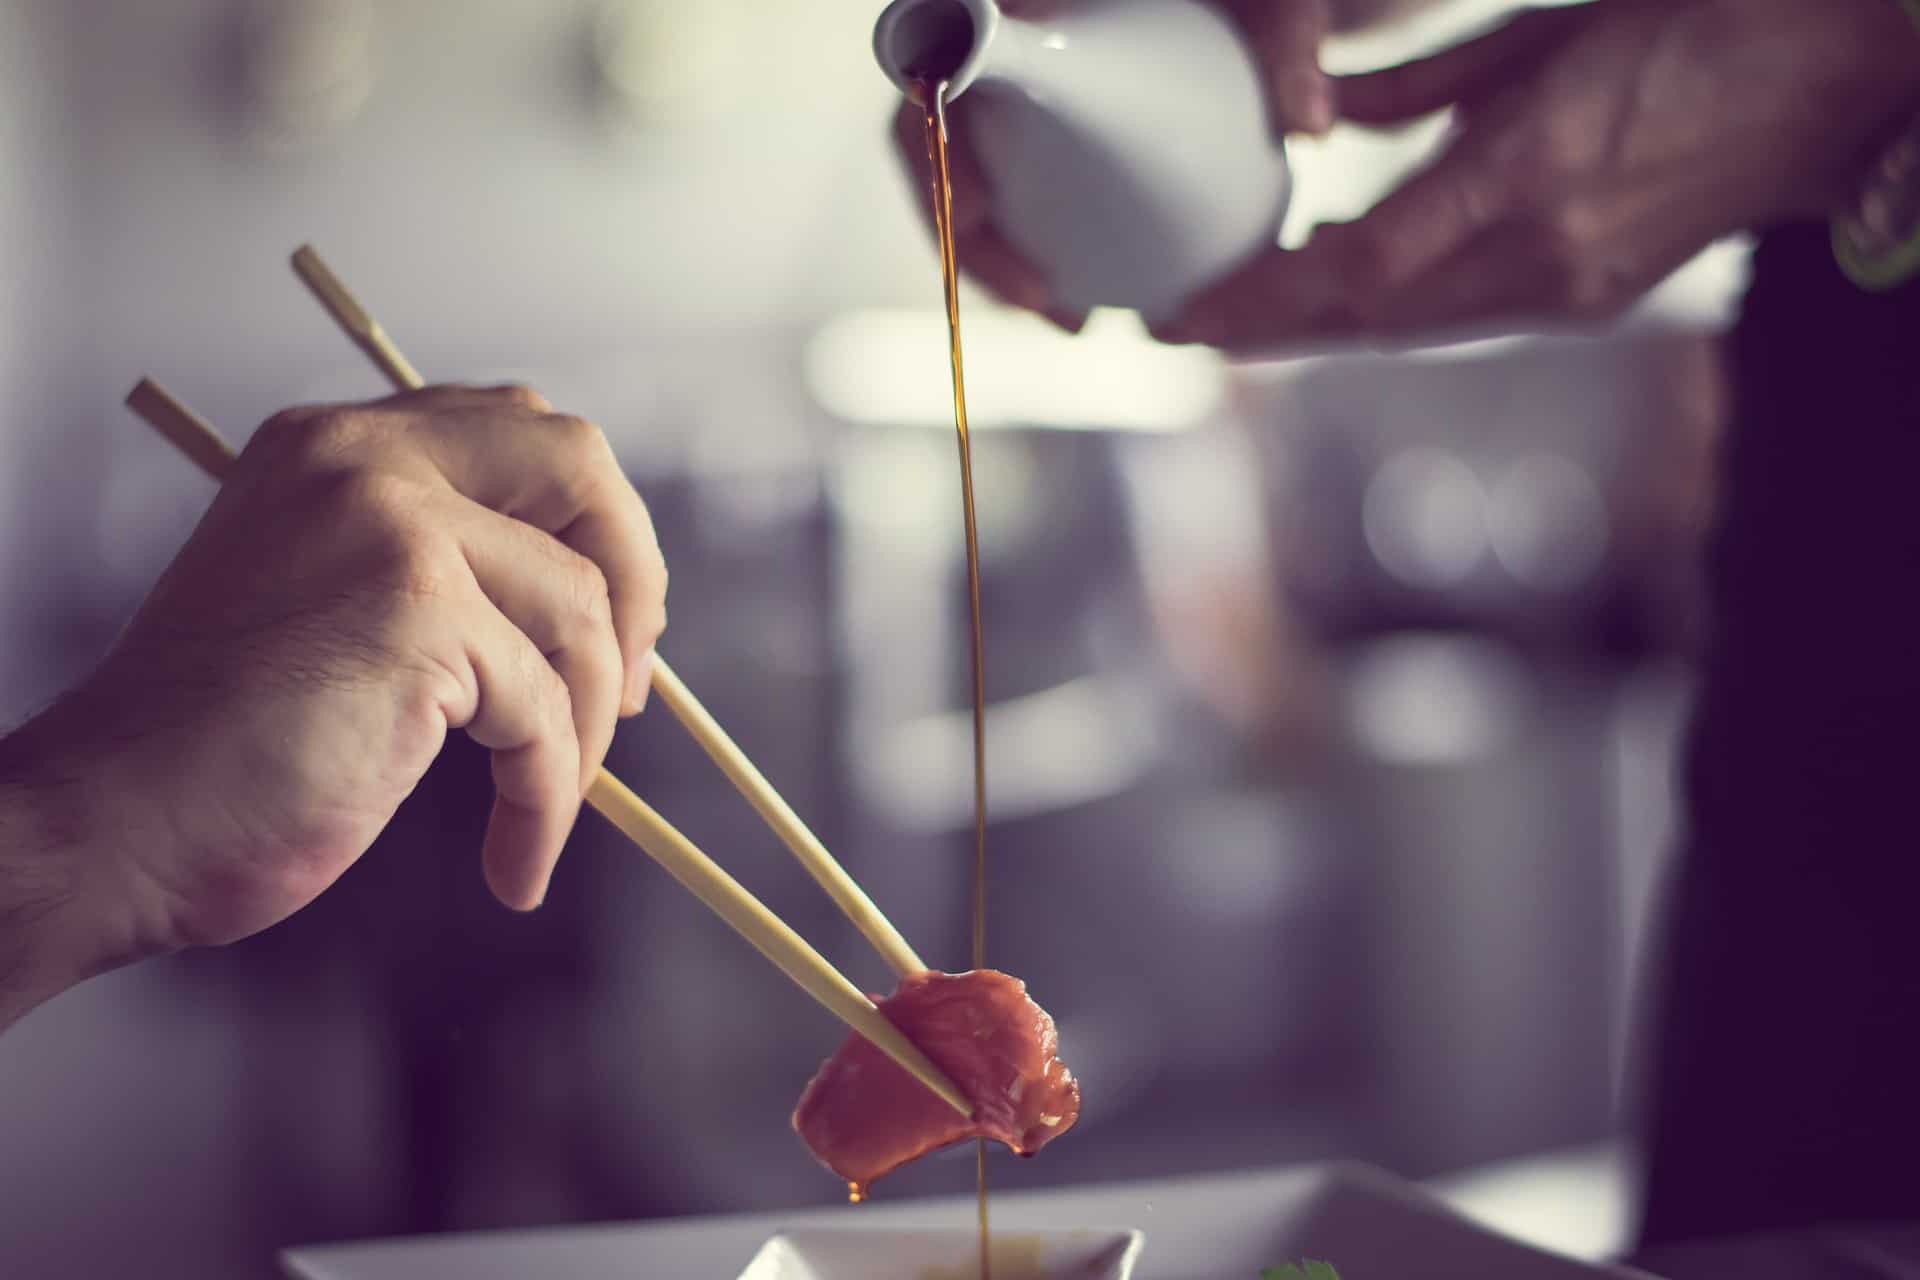 sushi e nang le mongobo oa tlhapi oa Japane